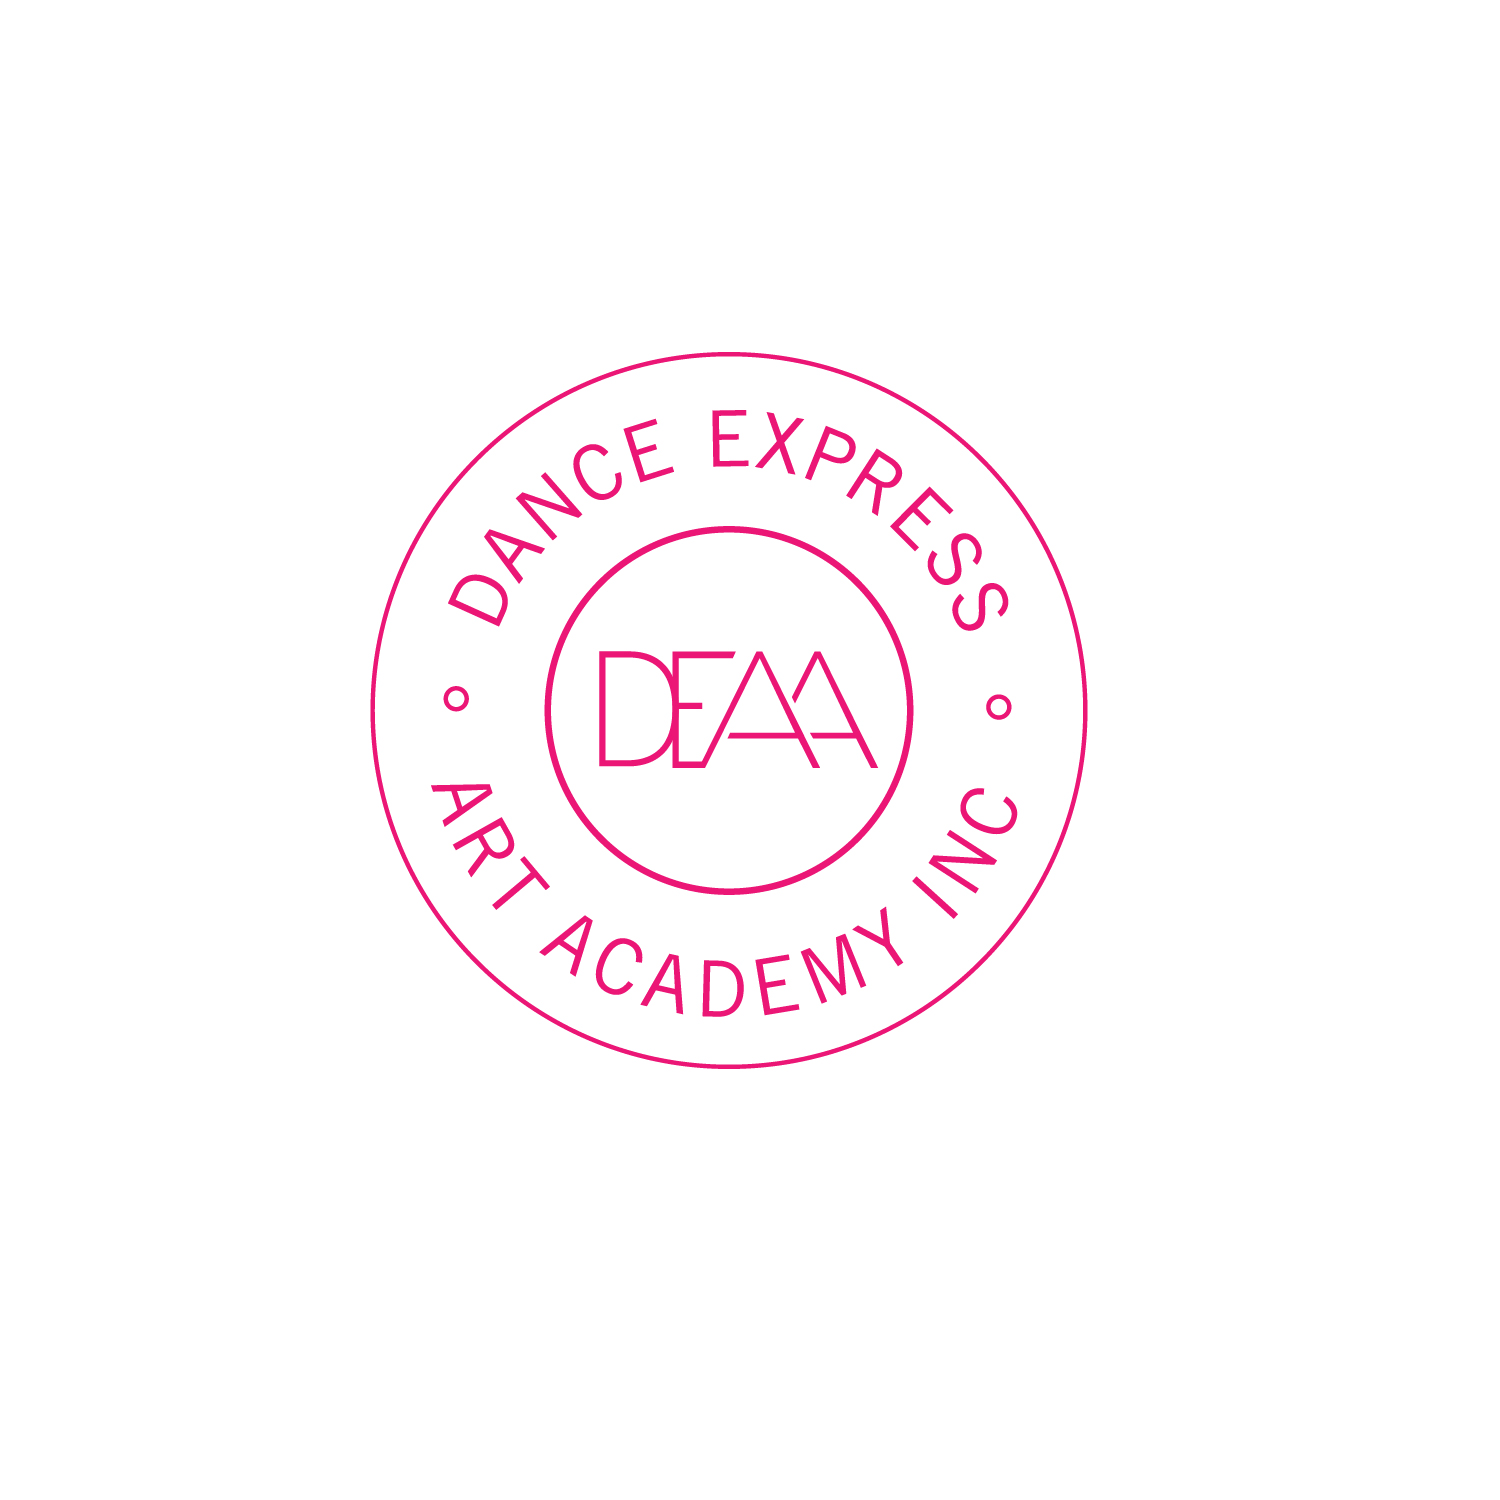 Dance Express Art Academy